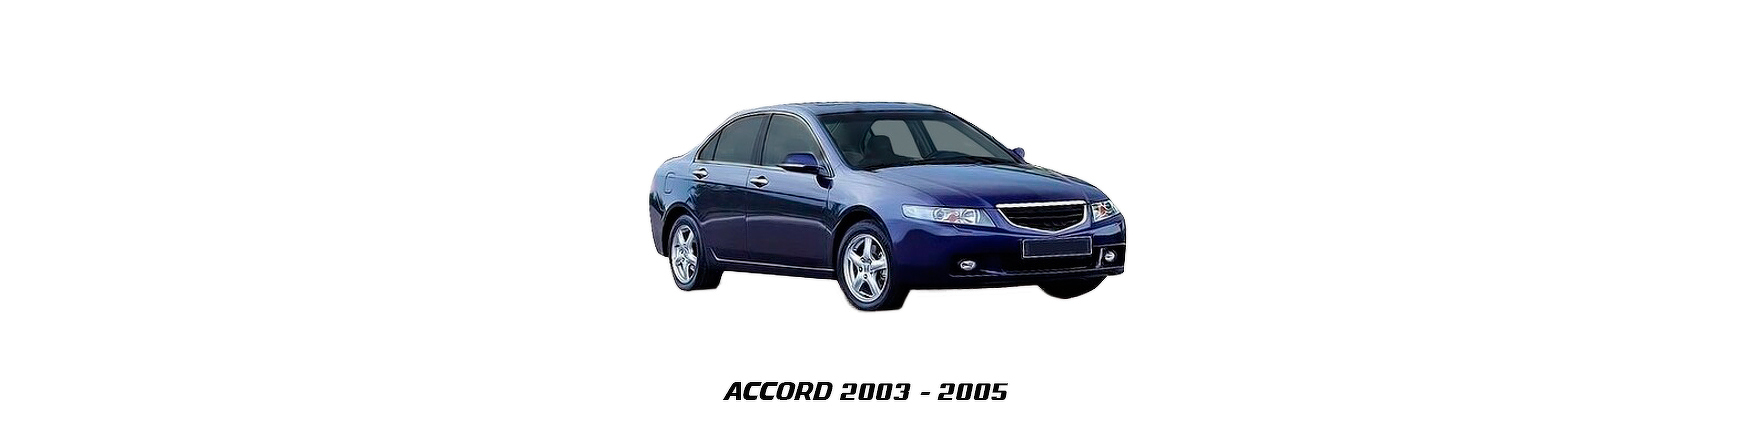 Piezas y Recambios de Honda Accord de 2003 a 2005 | Veramauto.es